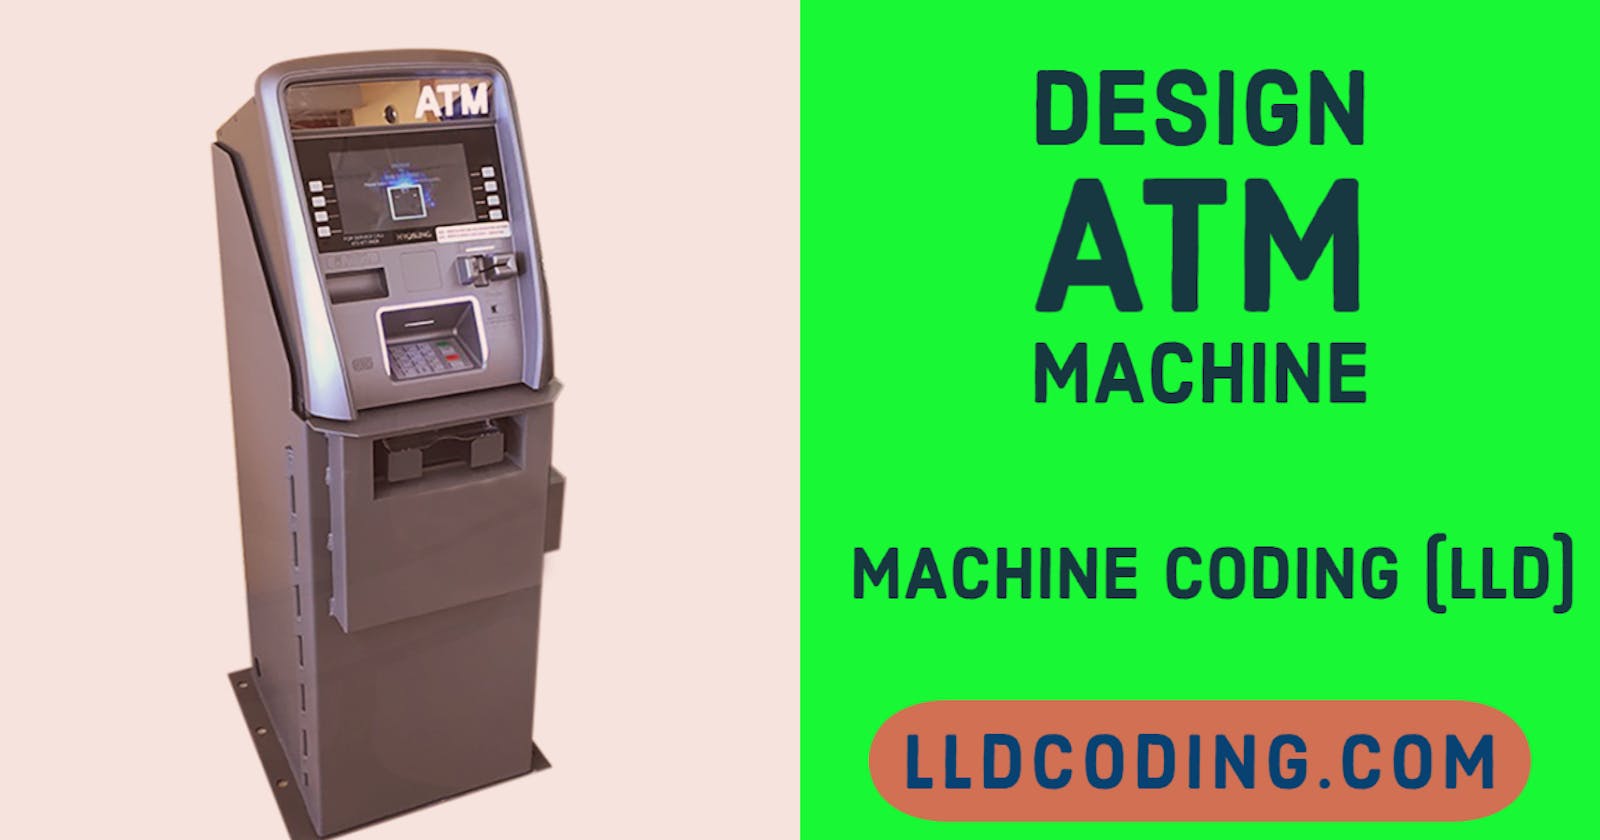 Design (LLD) a ATM machine - Machine Coding